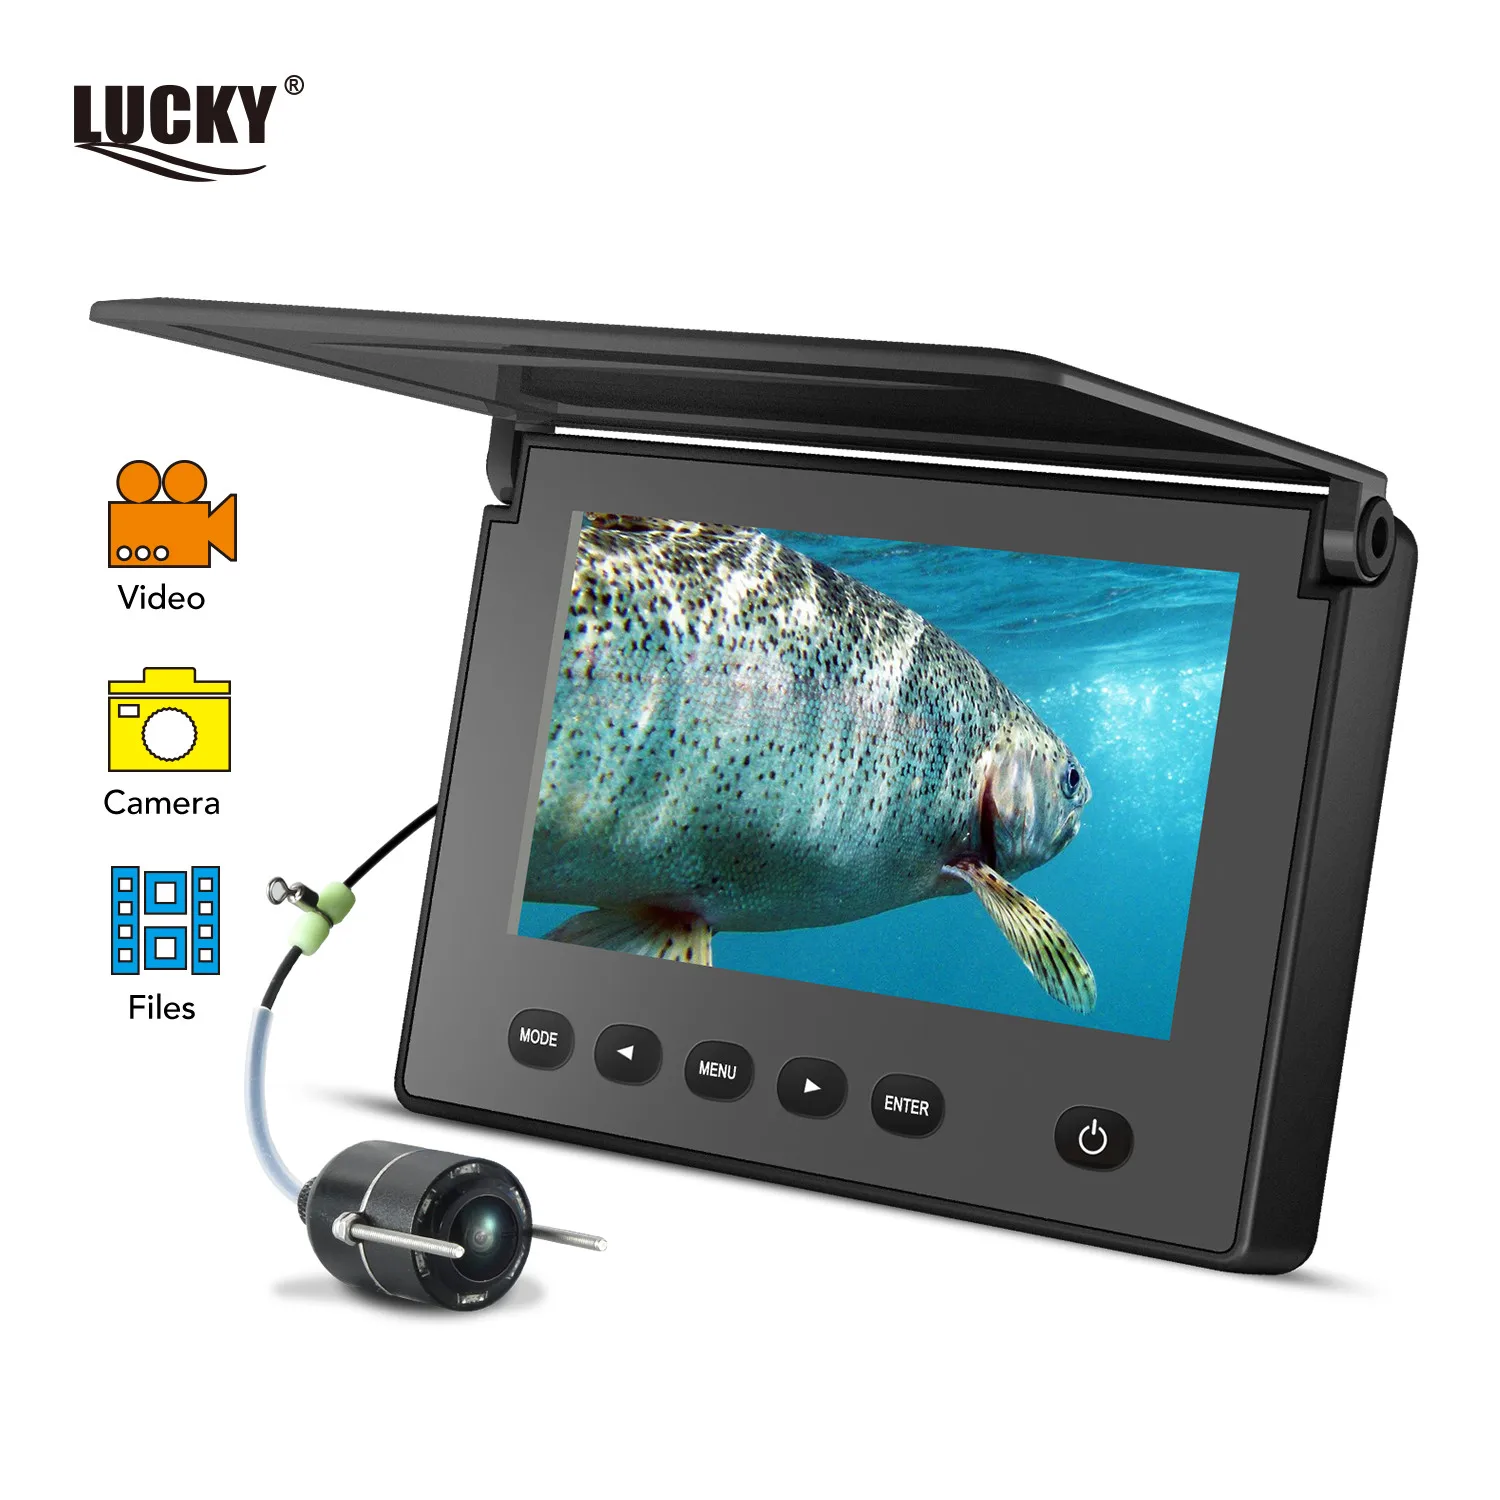 LUCKY Videocamera Subacquea per la Pesca DVR Ricerca Subacquea per Pesci Monitor a infrarossi LED Portatile Videocamera per Pesca Monitor LCD per Kayak da Mare Pesca in Mare 